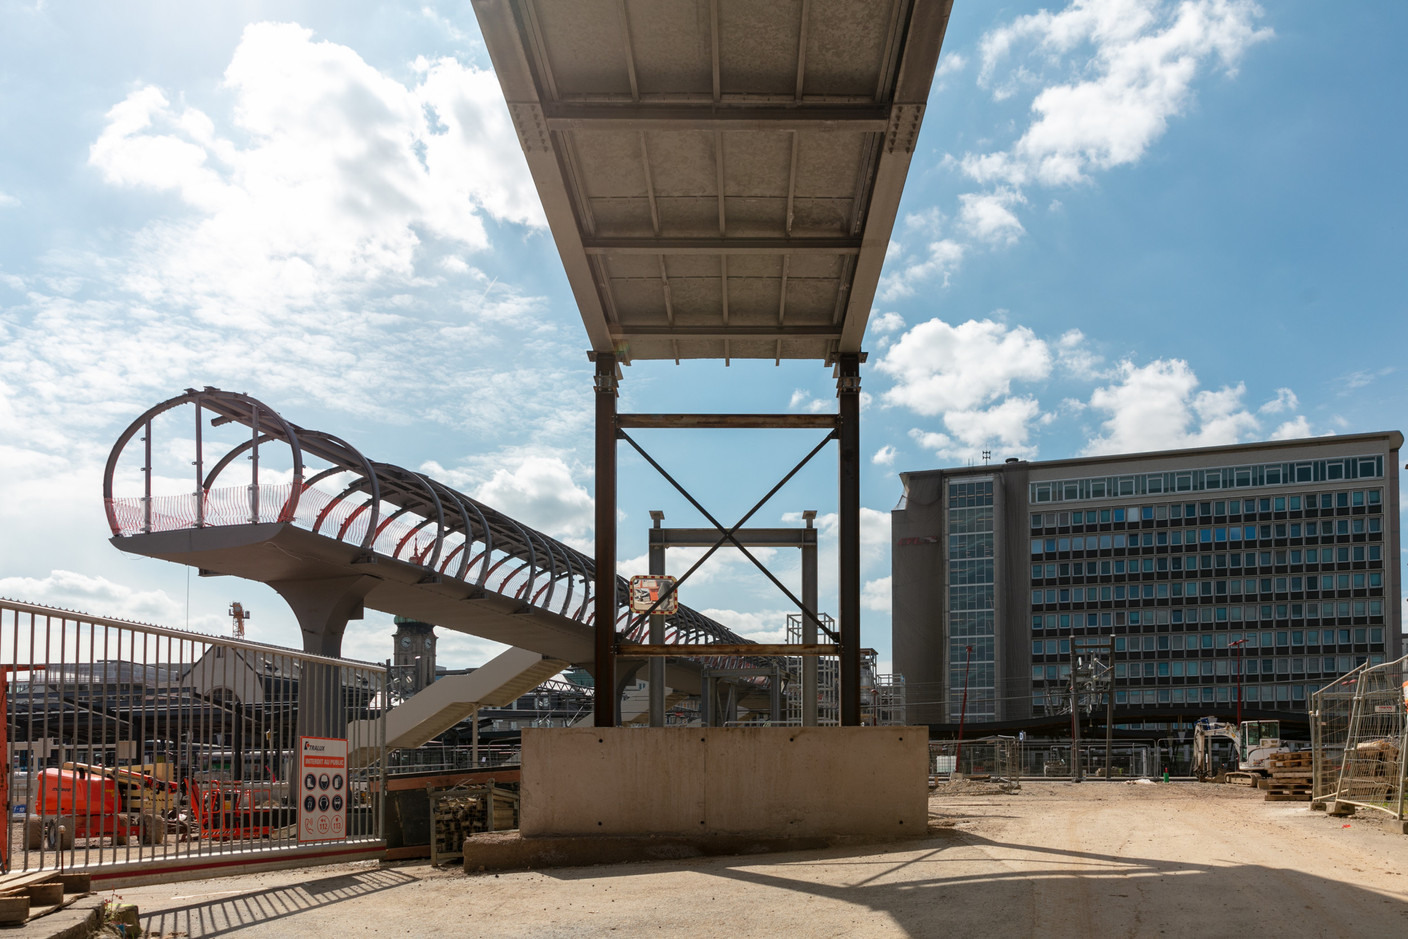 Les CFL ne précisent pas le budget de la seule passerelle, englobé dans celui de 171 millions d’euros pour le projet d’extension de la gare de Luxembourg. (Photo: Romain Gamba/Maison Moderne)